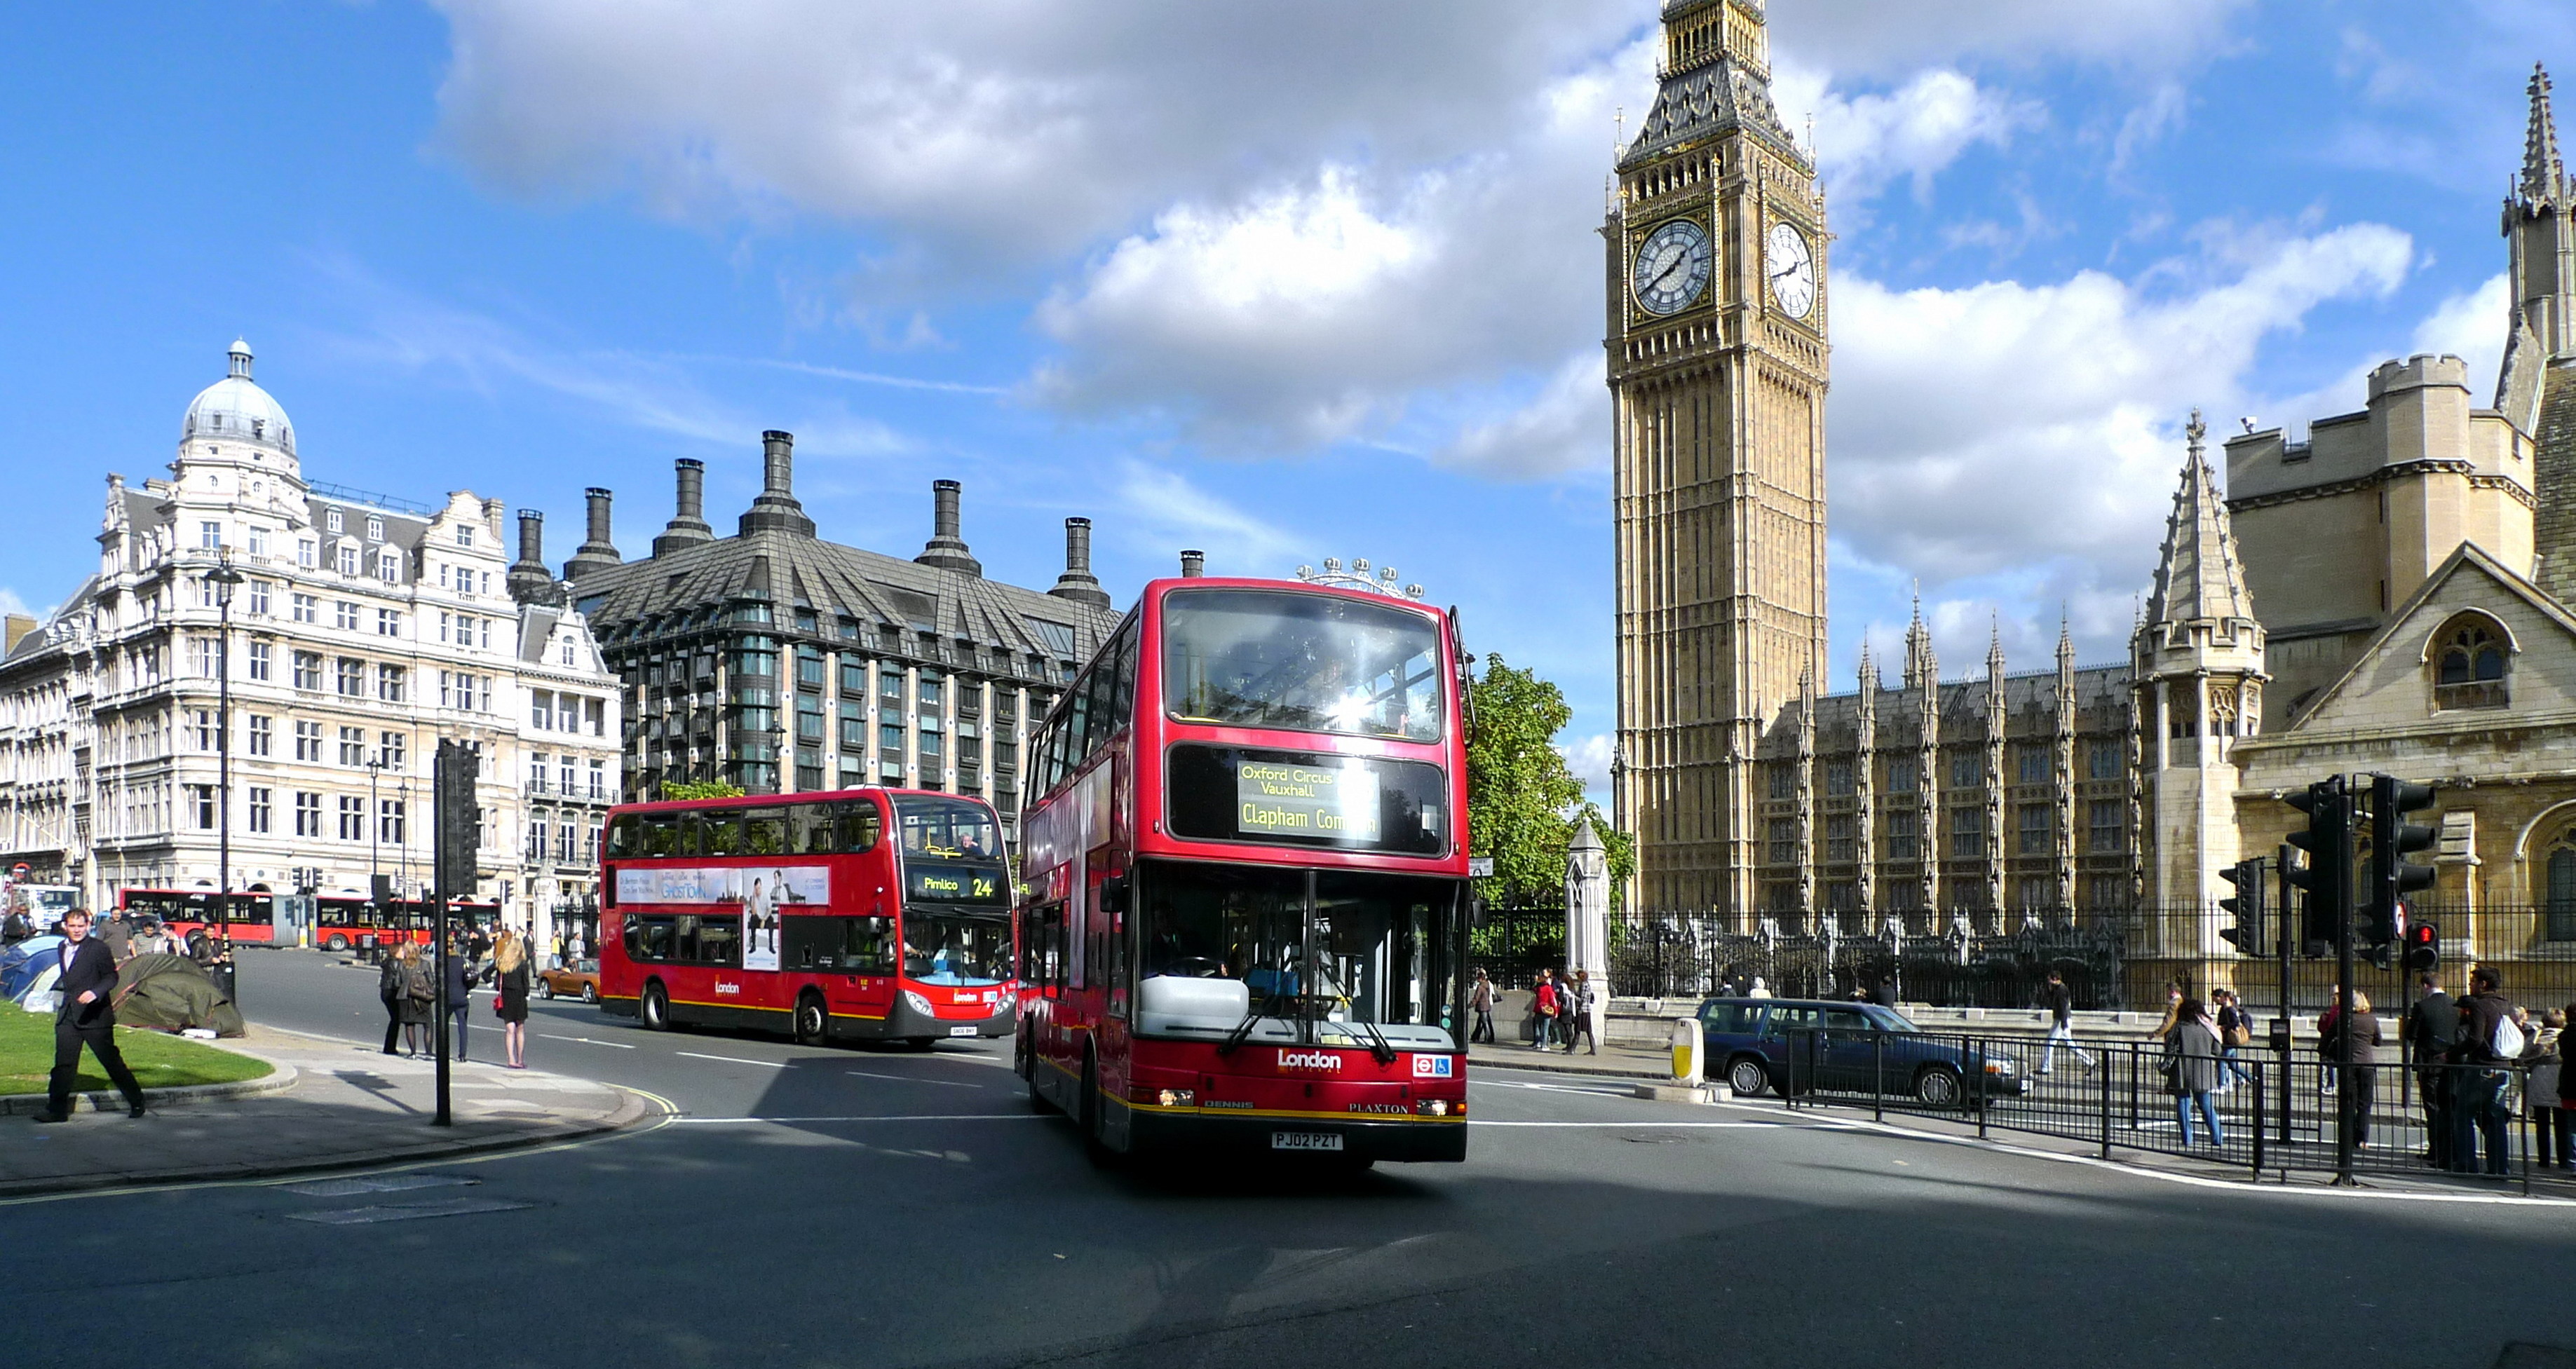 Uk h. Биг Бен (Великобритания). Лондон автобус Биг Бен. Оксфорд-стрит в Лондоне. Достопримечательности Лондона Биг Бен.